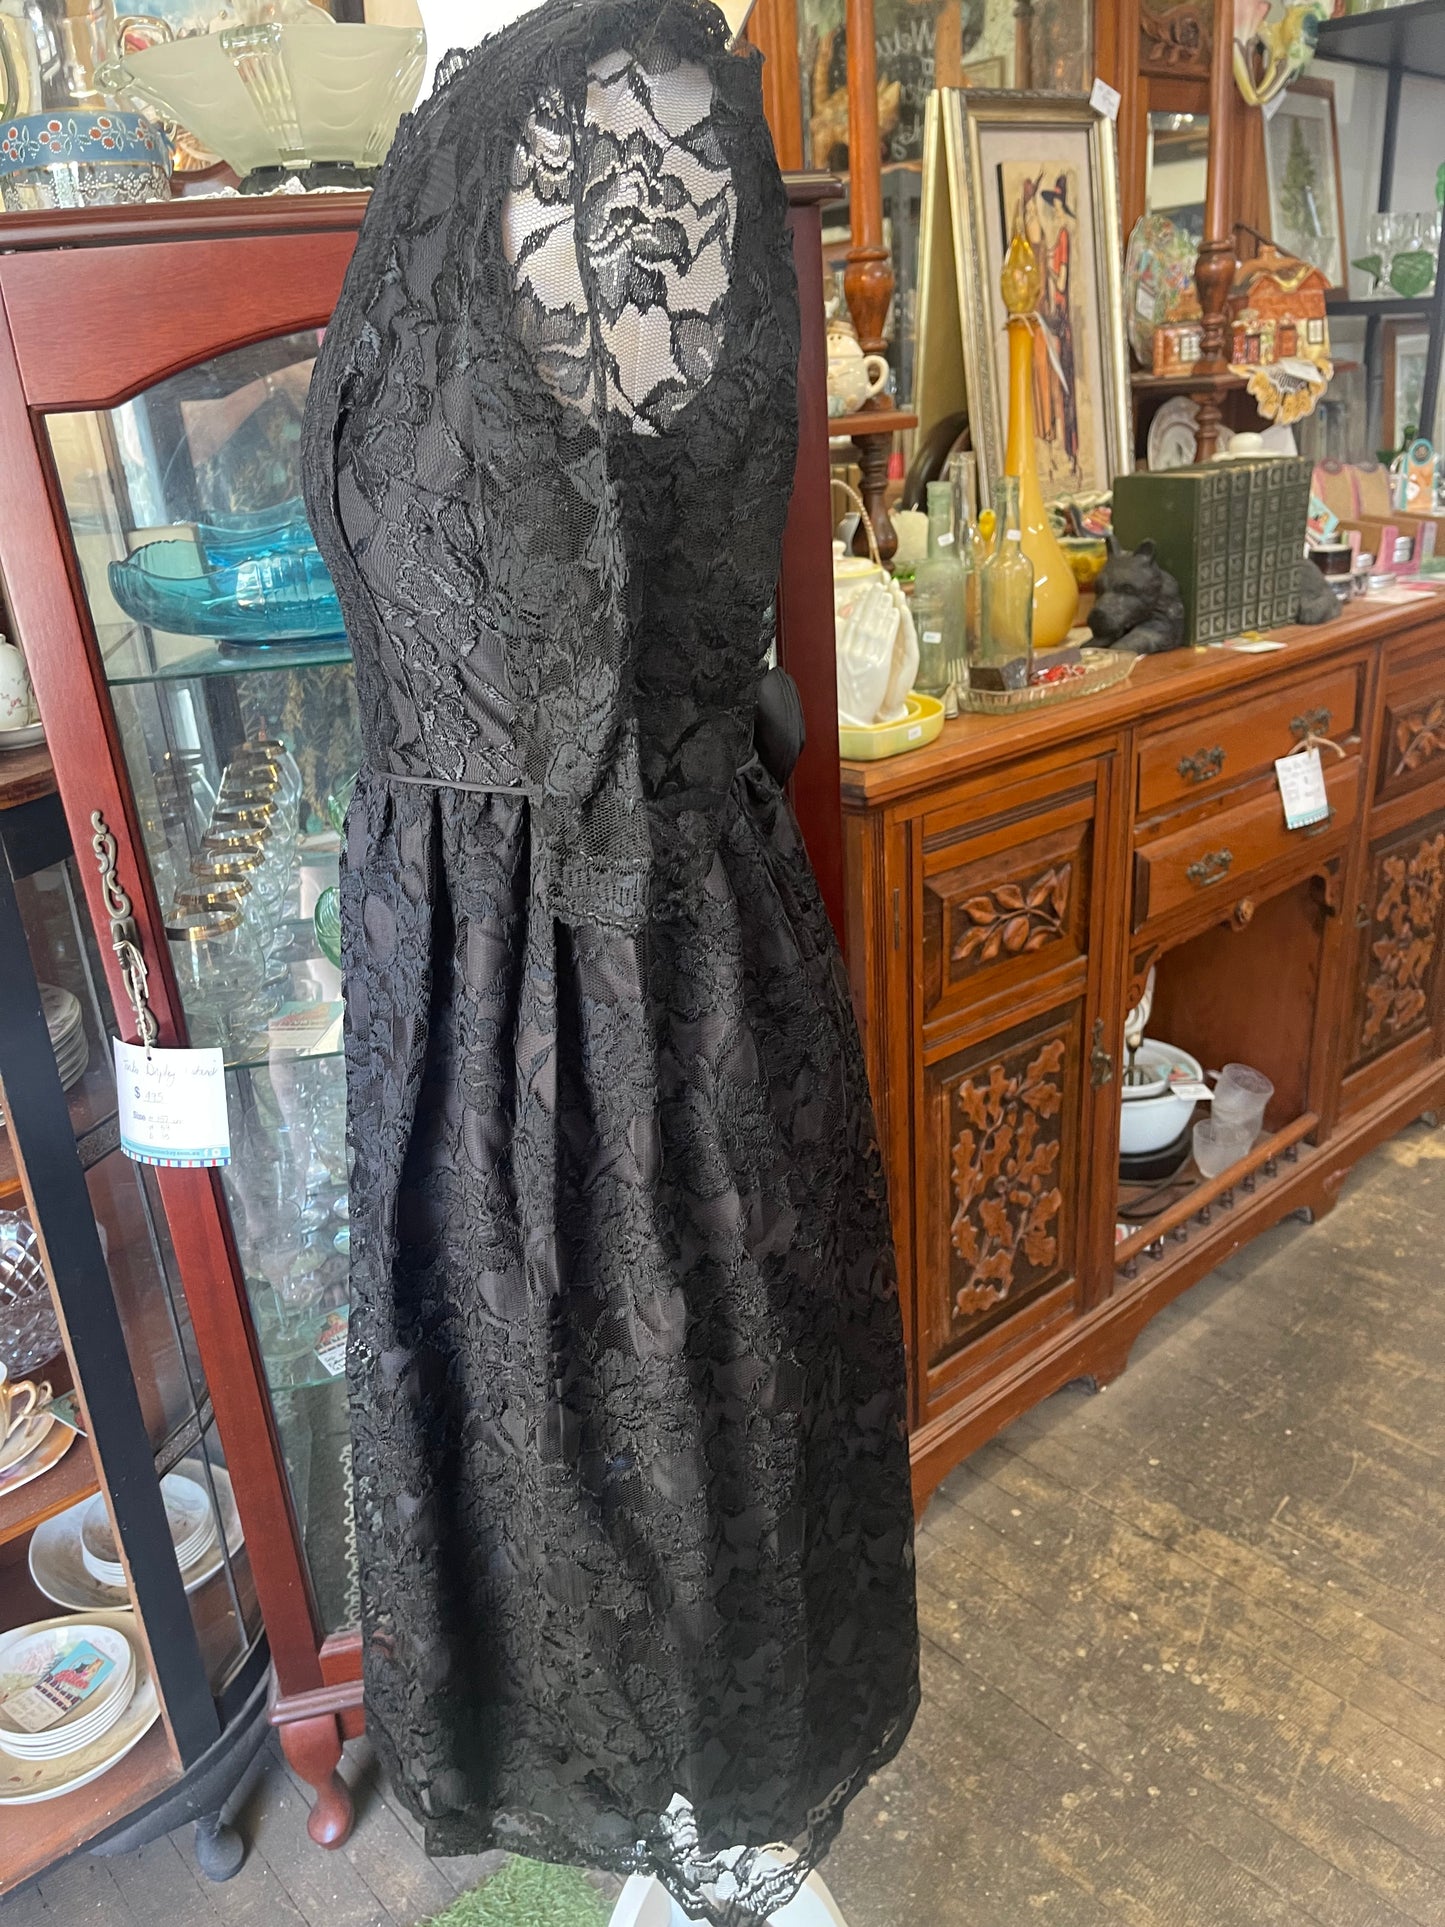 Vintage 1980s black lace cocktail dress size 8 86cm Bust